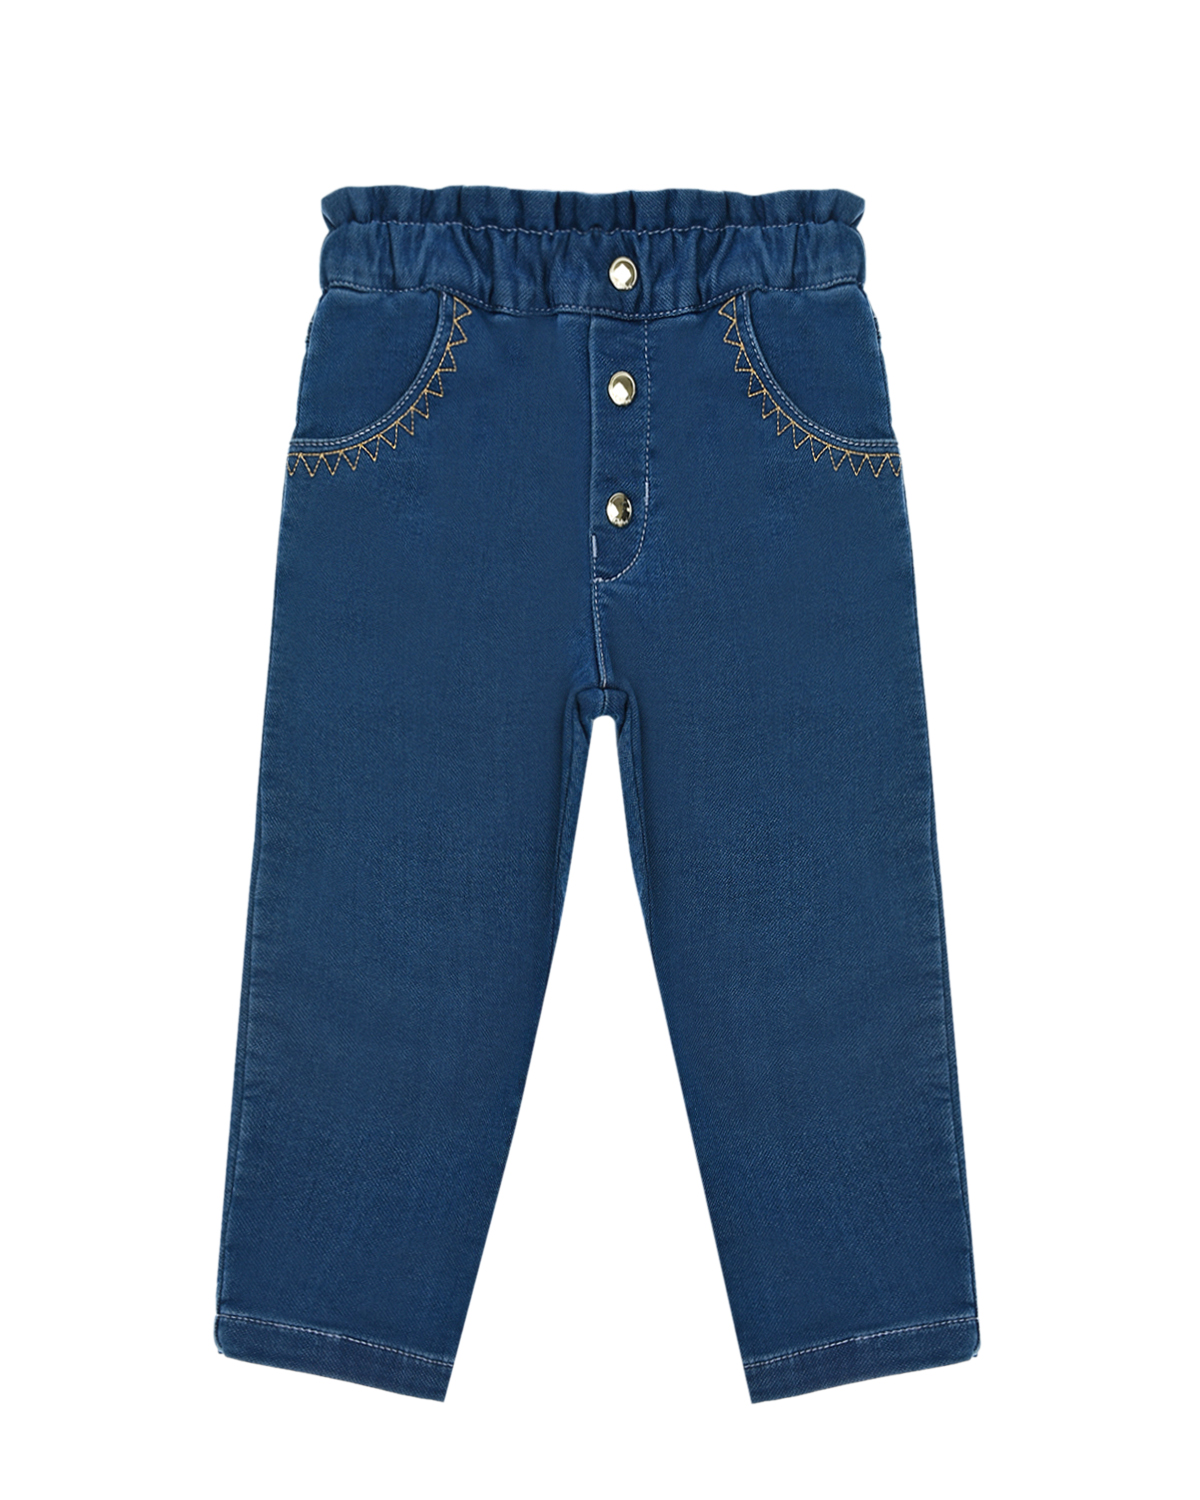 Синие джинсы с пуговицами Chloe детские, размер 86, цвет синий - фото 1